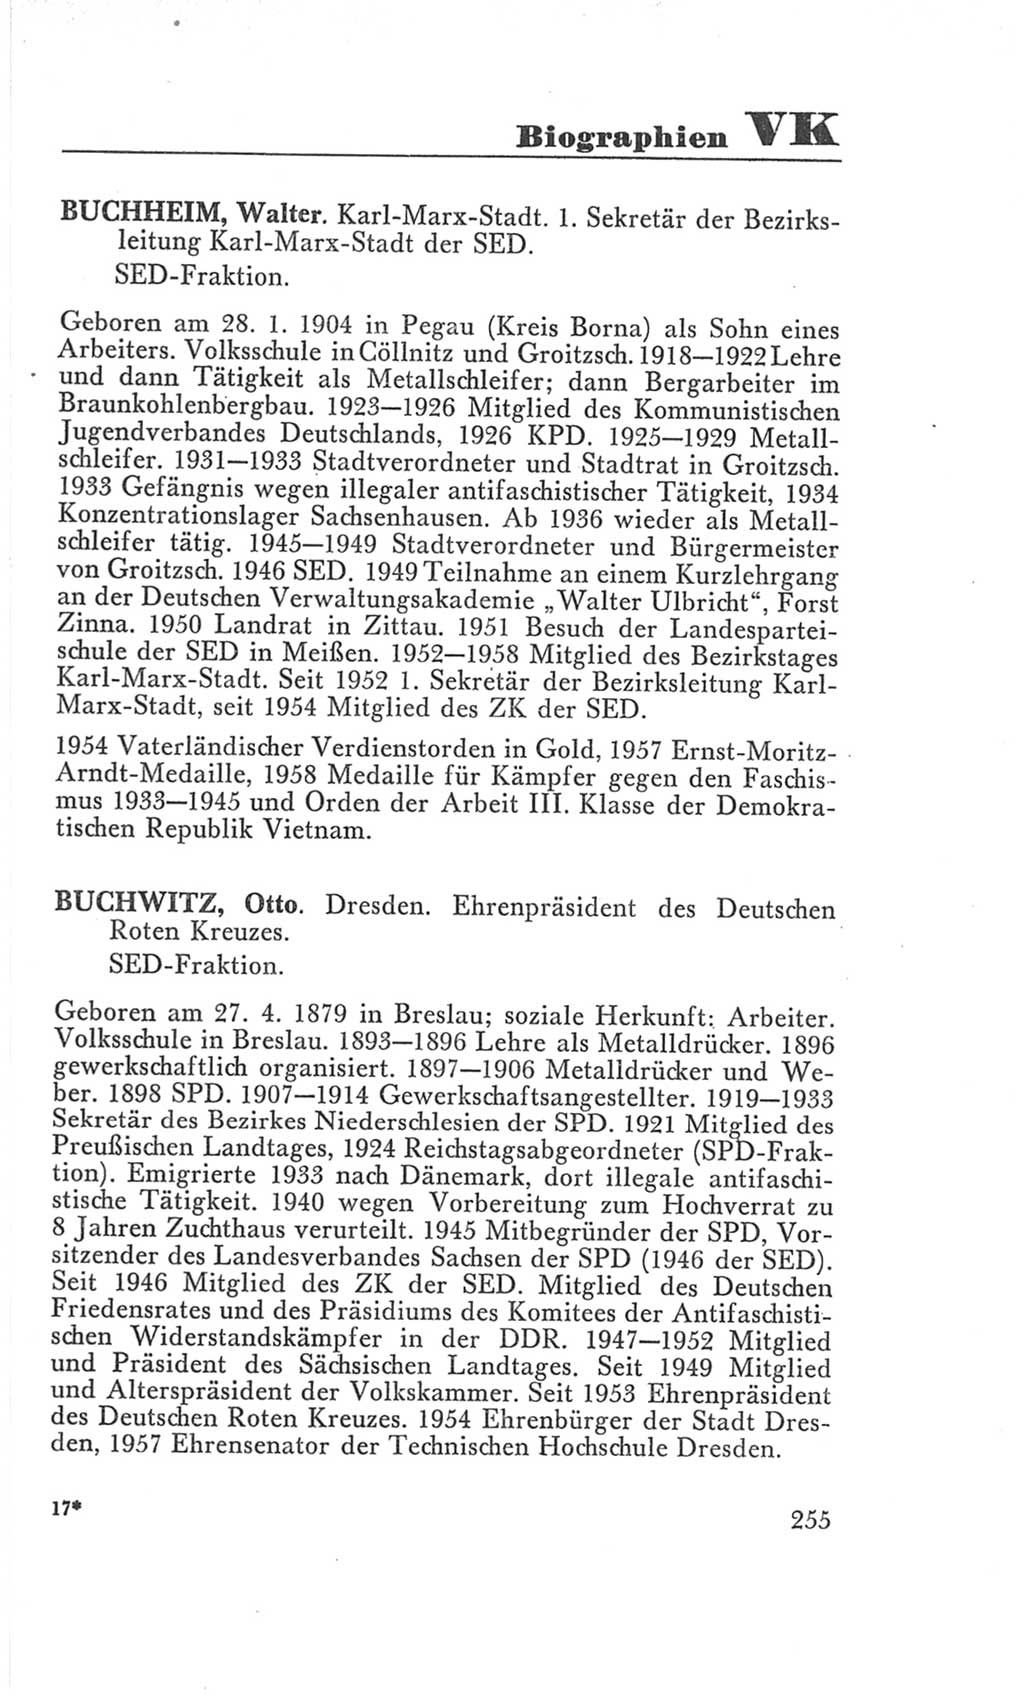 Handbuch der Volkskammer (VK) der Deutschen Demokratischen Republik (DDR), 3. Wahlperiode 1958-1963, Seite 255 (Hdb. VK. DDR 3. WP. 1958-1963, S. 255)